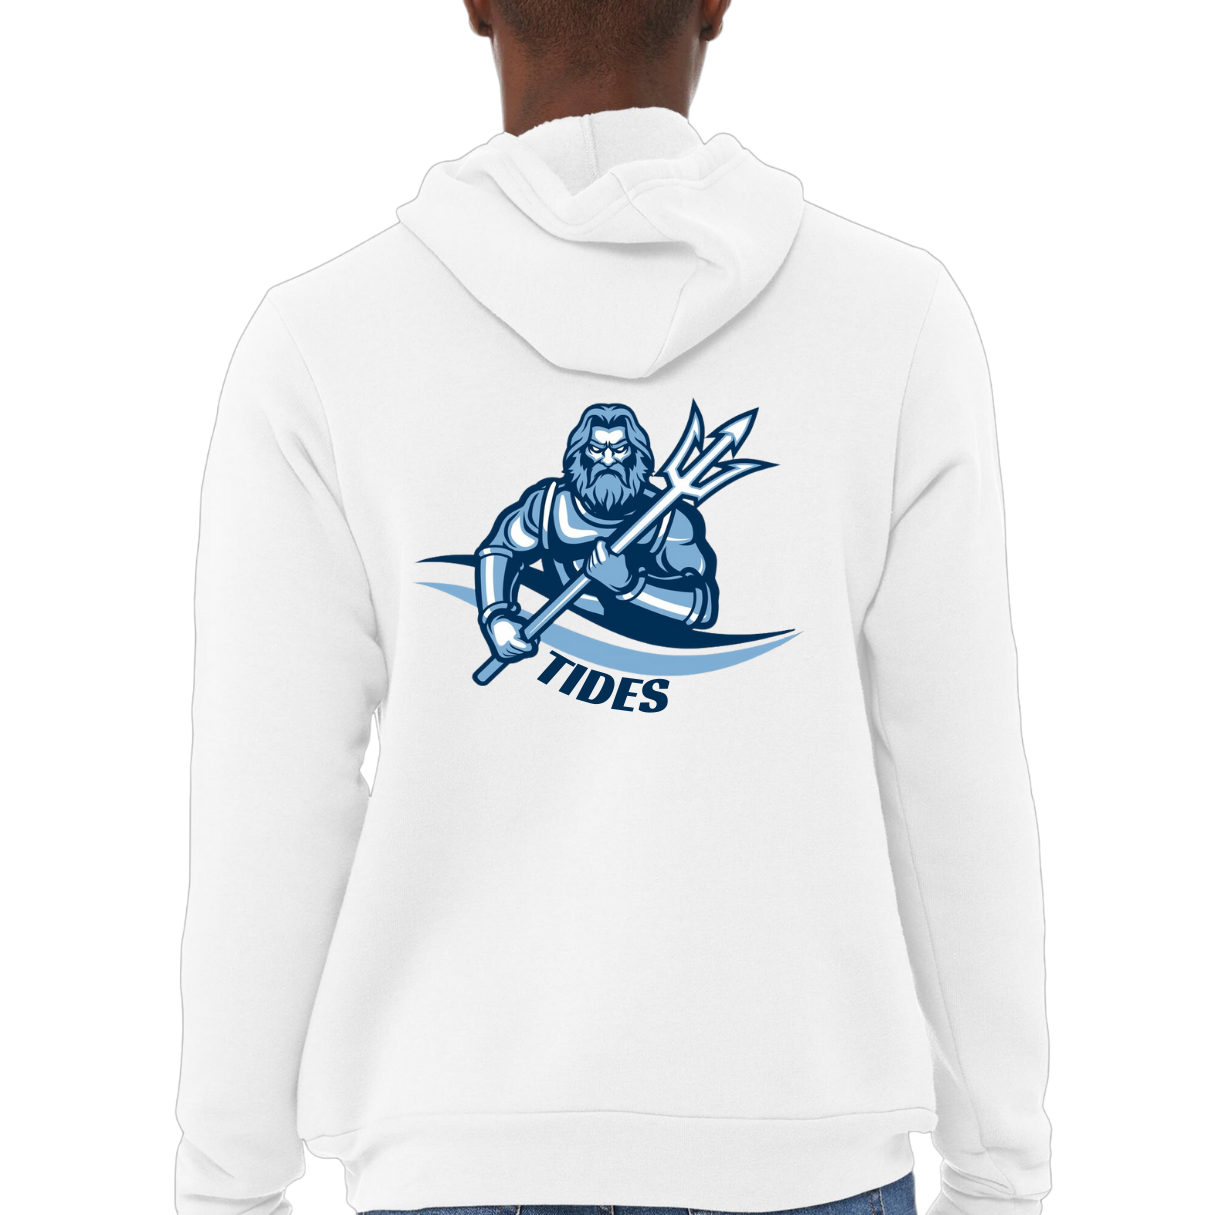 Poseidon Has Your Back Hooded Sweatshirt- Adult and Youth